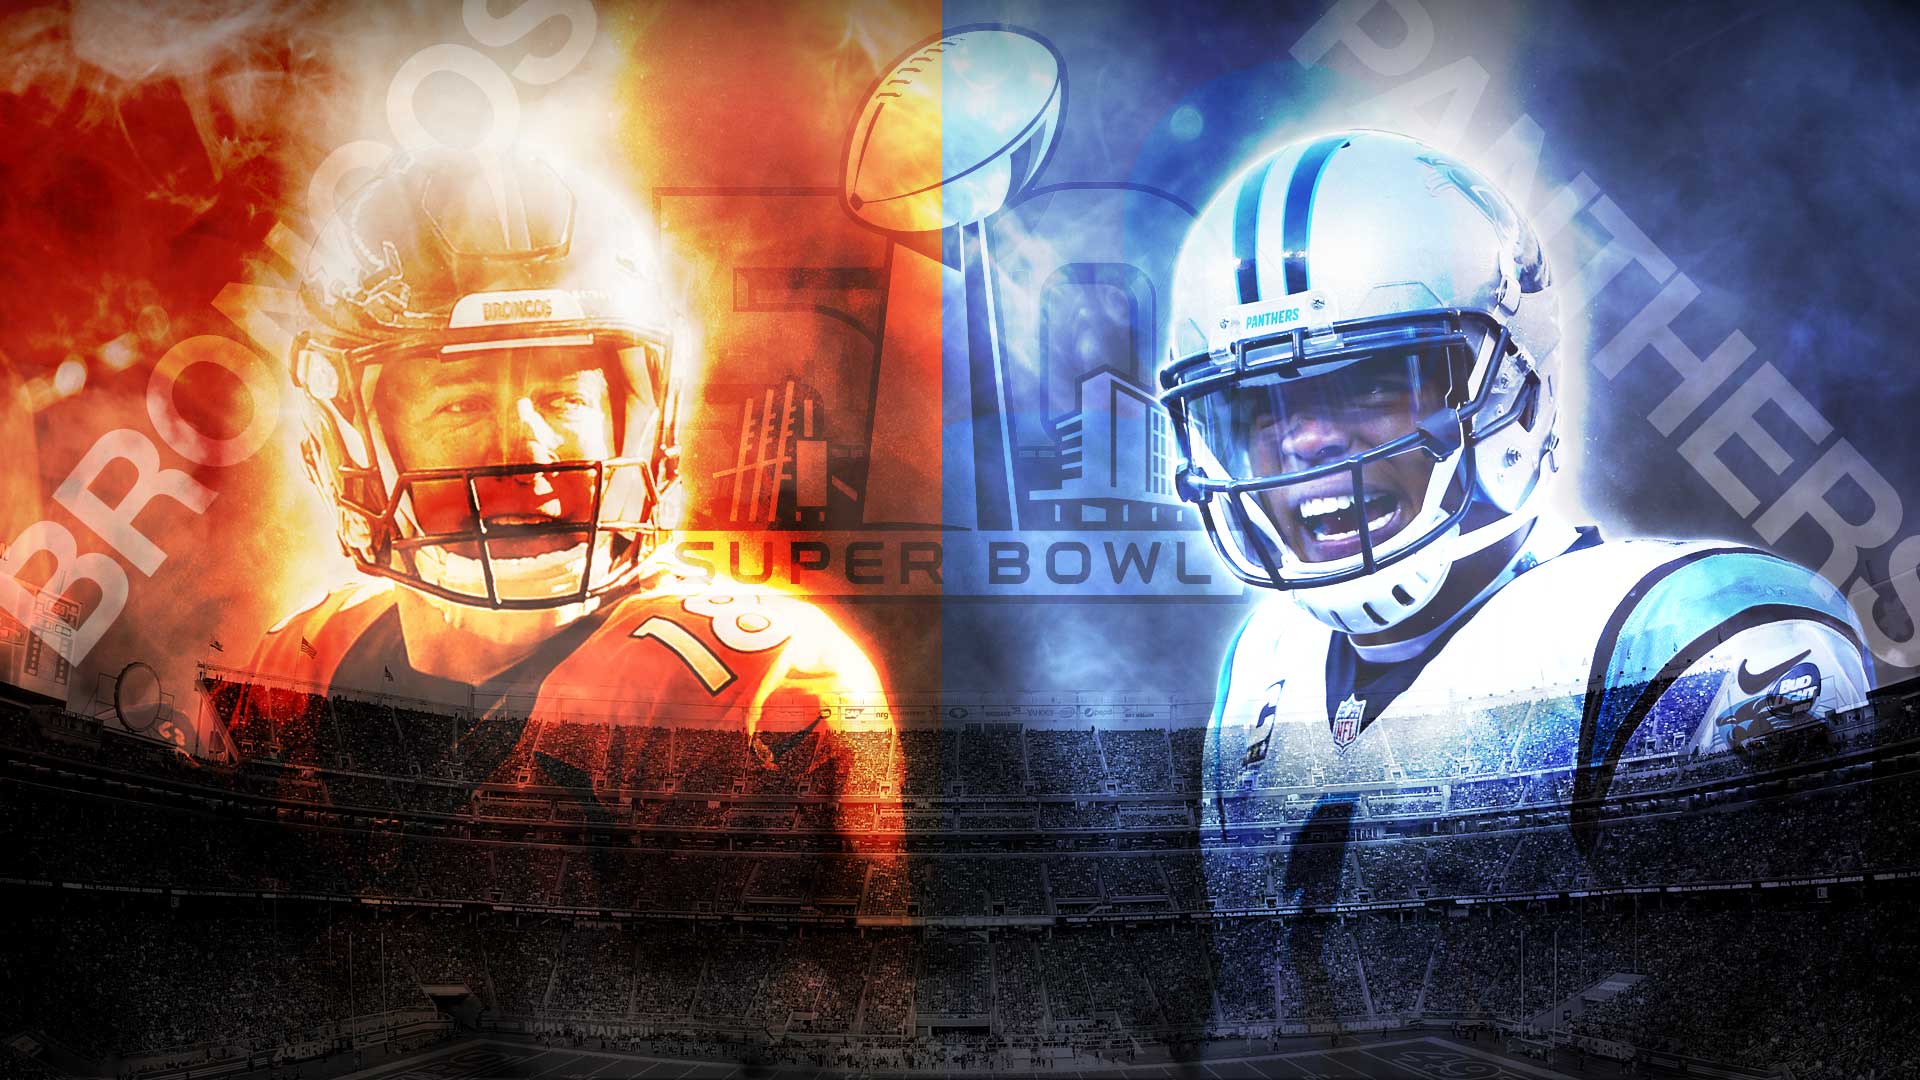 Super Bowl 50: Denver Broncos vs. Carolina Panthers, date, time